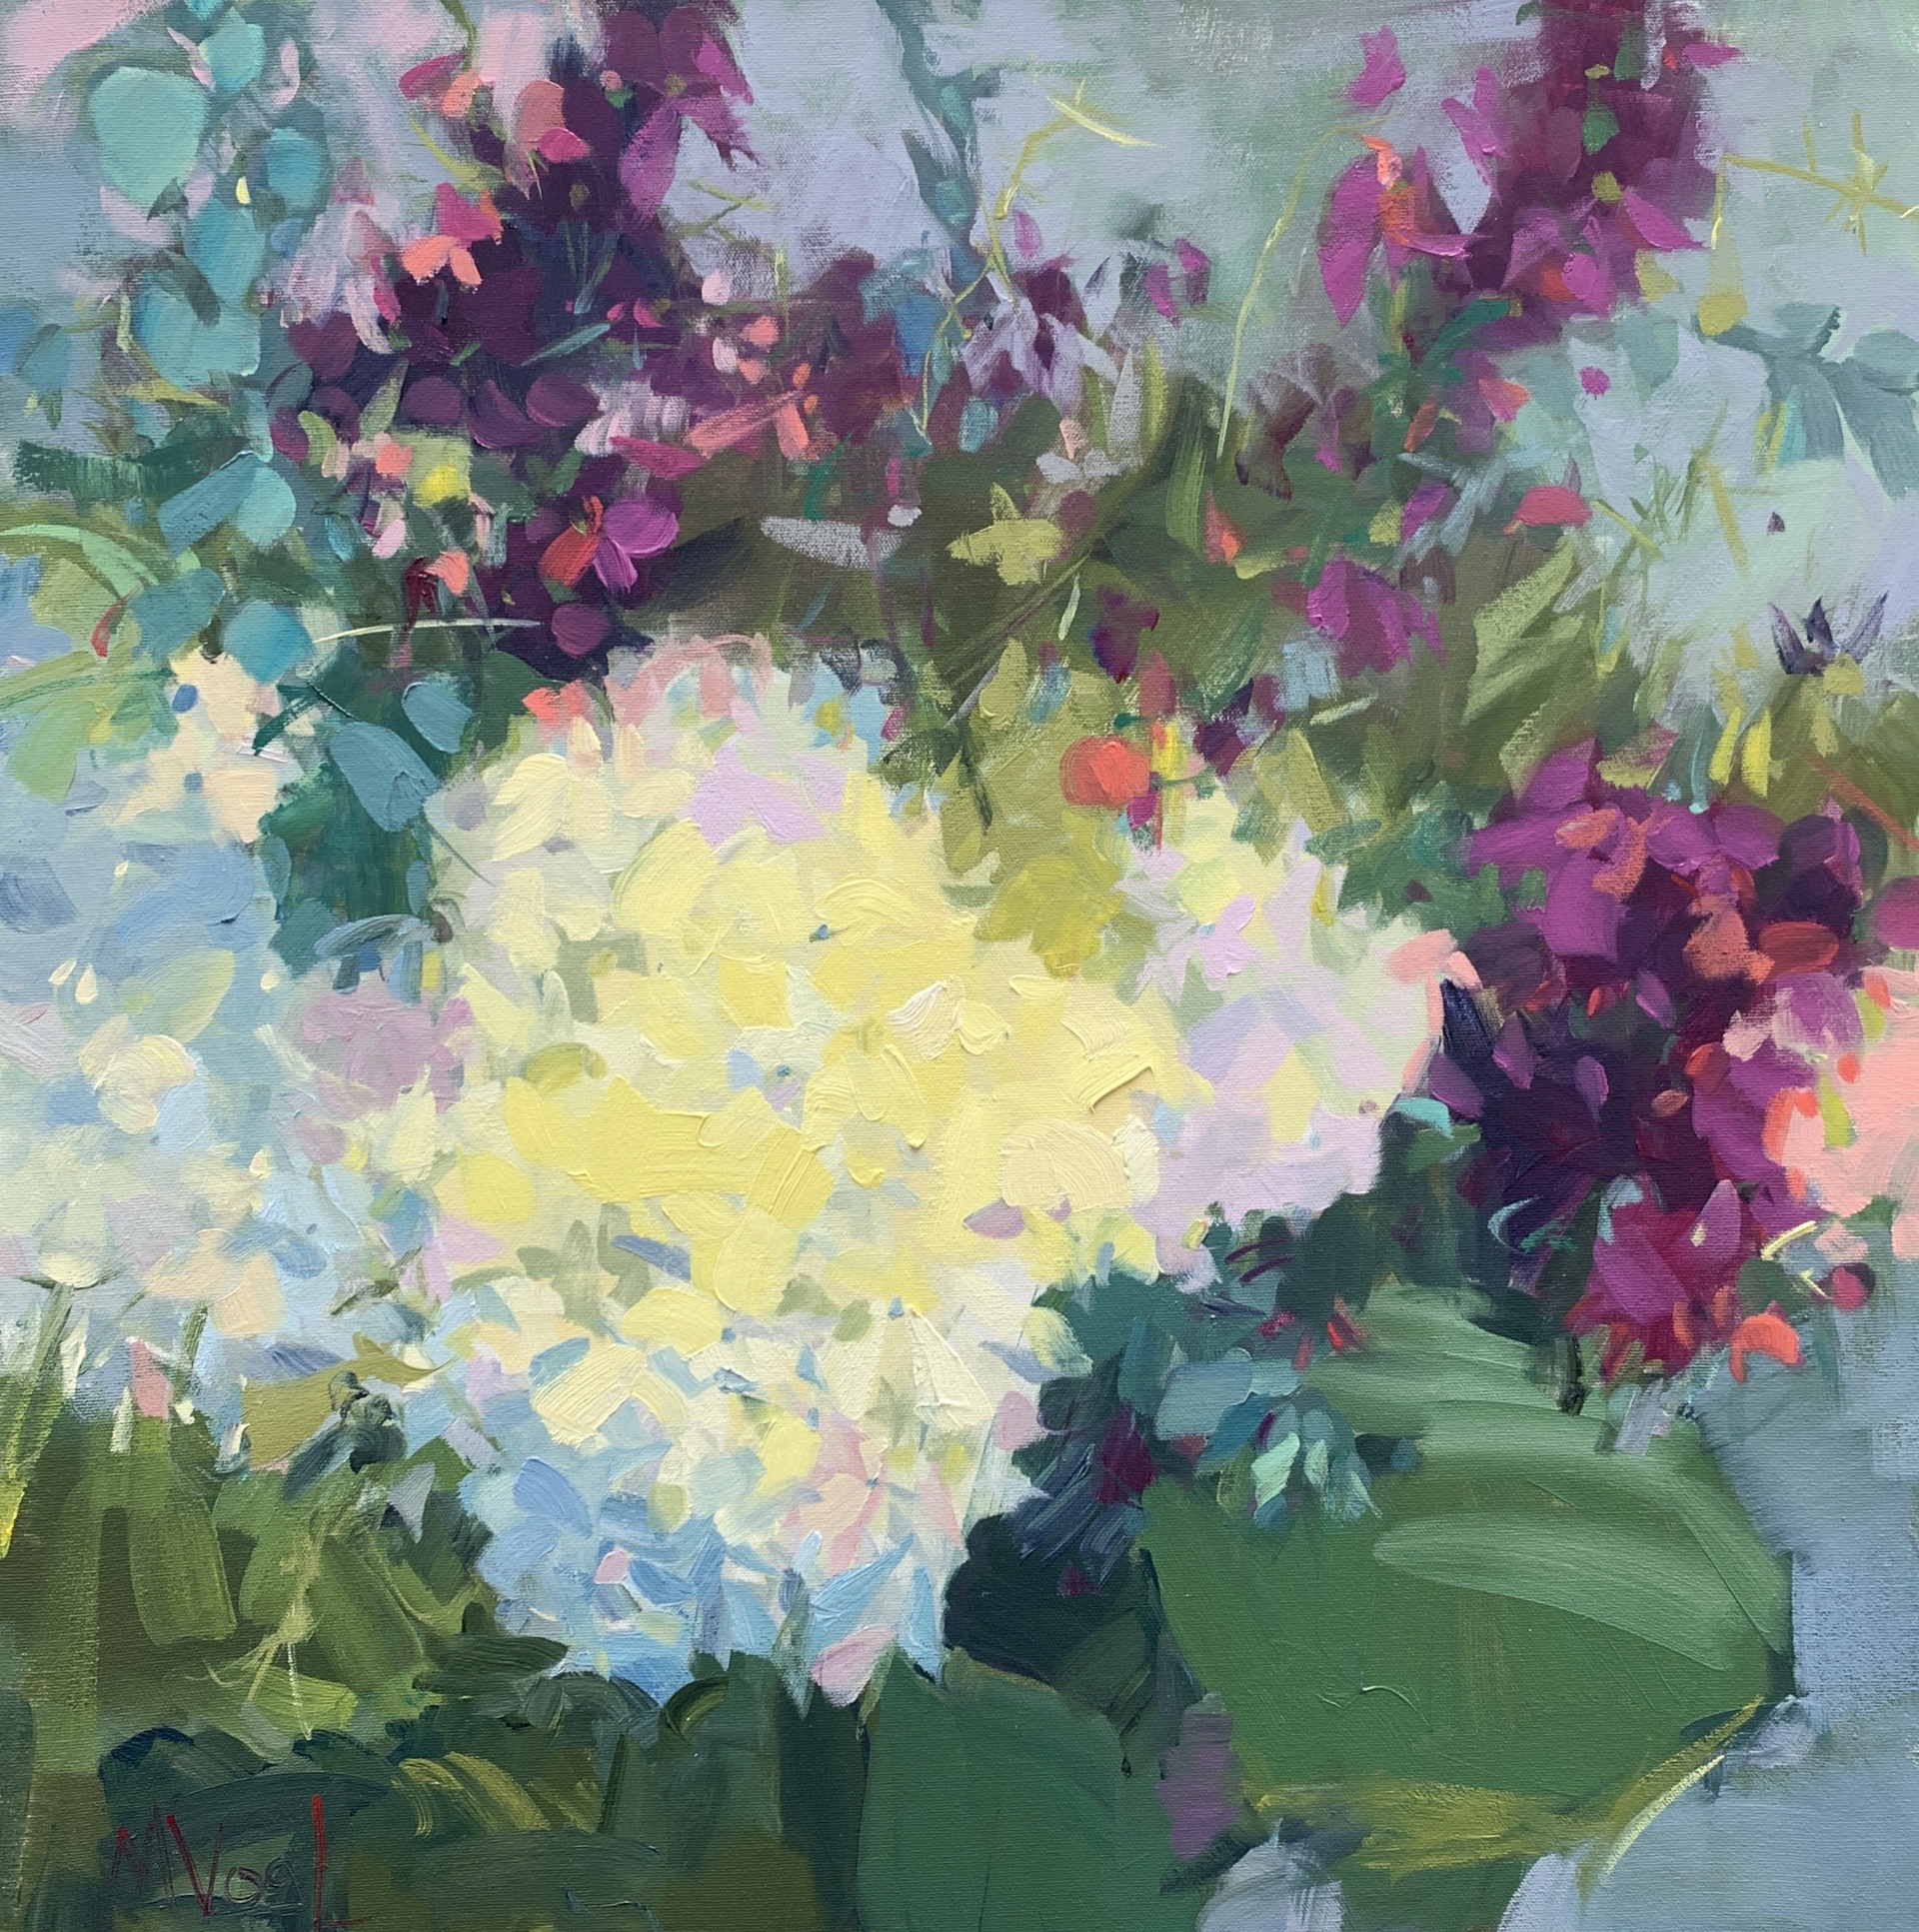 Floral Affair by Marissa Vogl